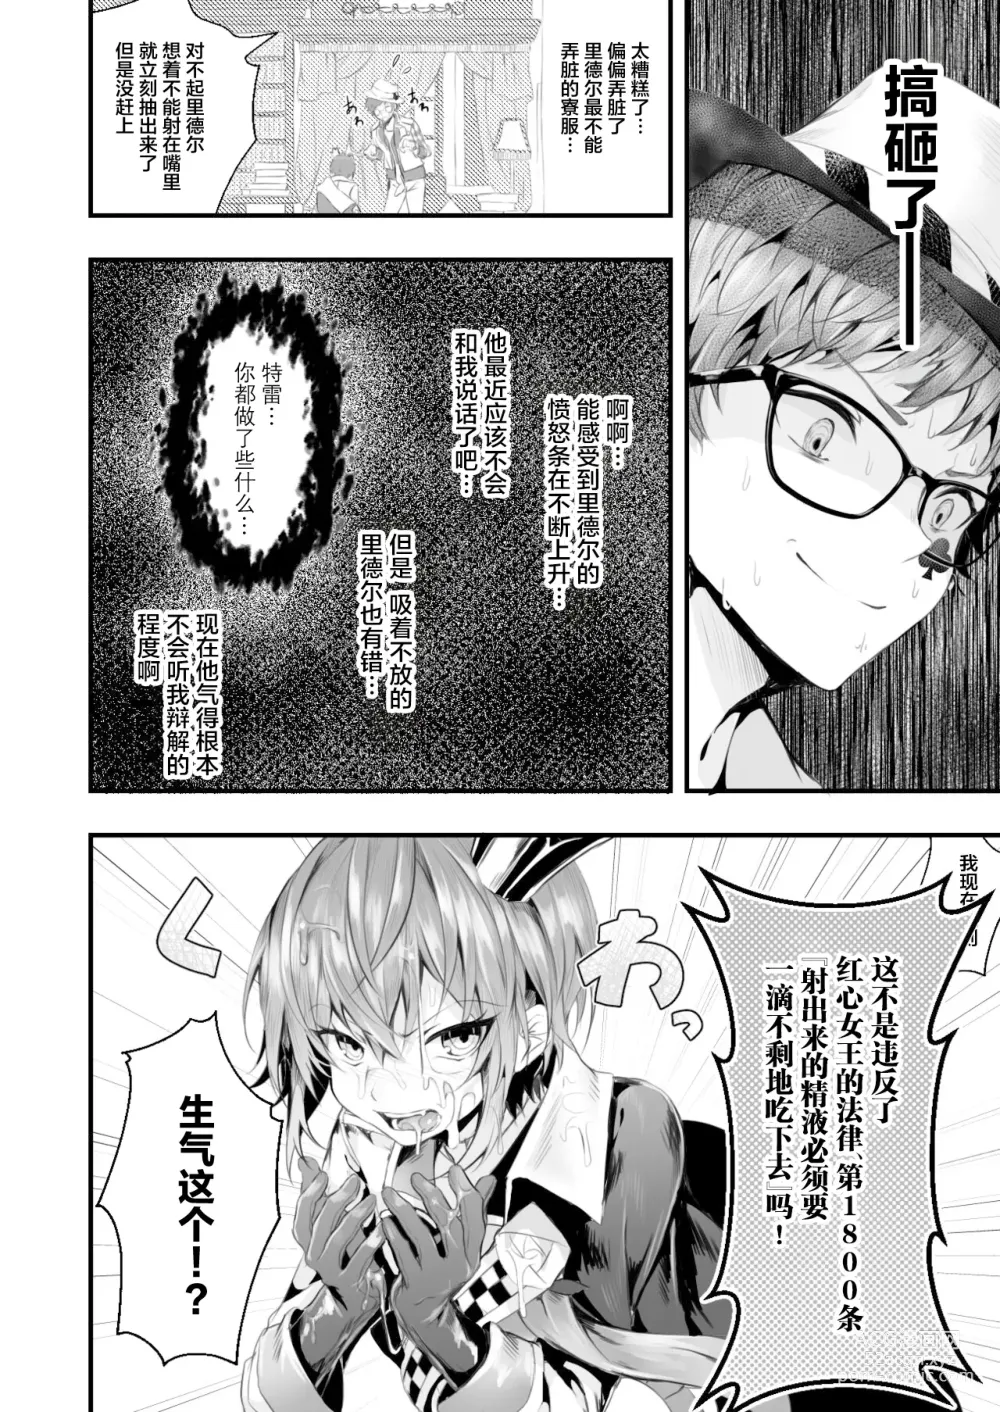 Page 7 of doujinshi Heartslabyul no Ryouchou Tarumono